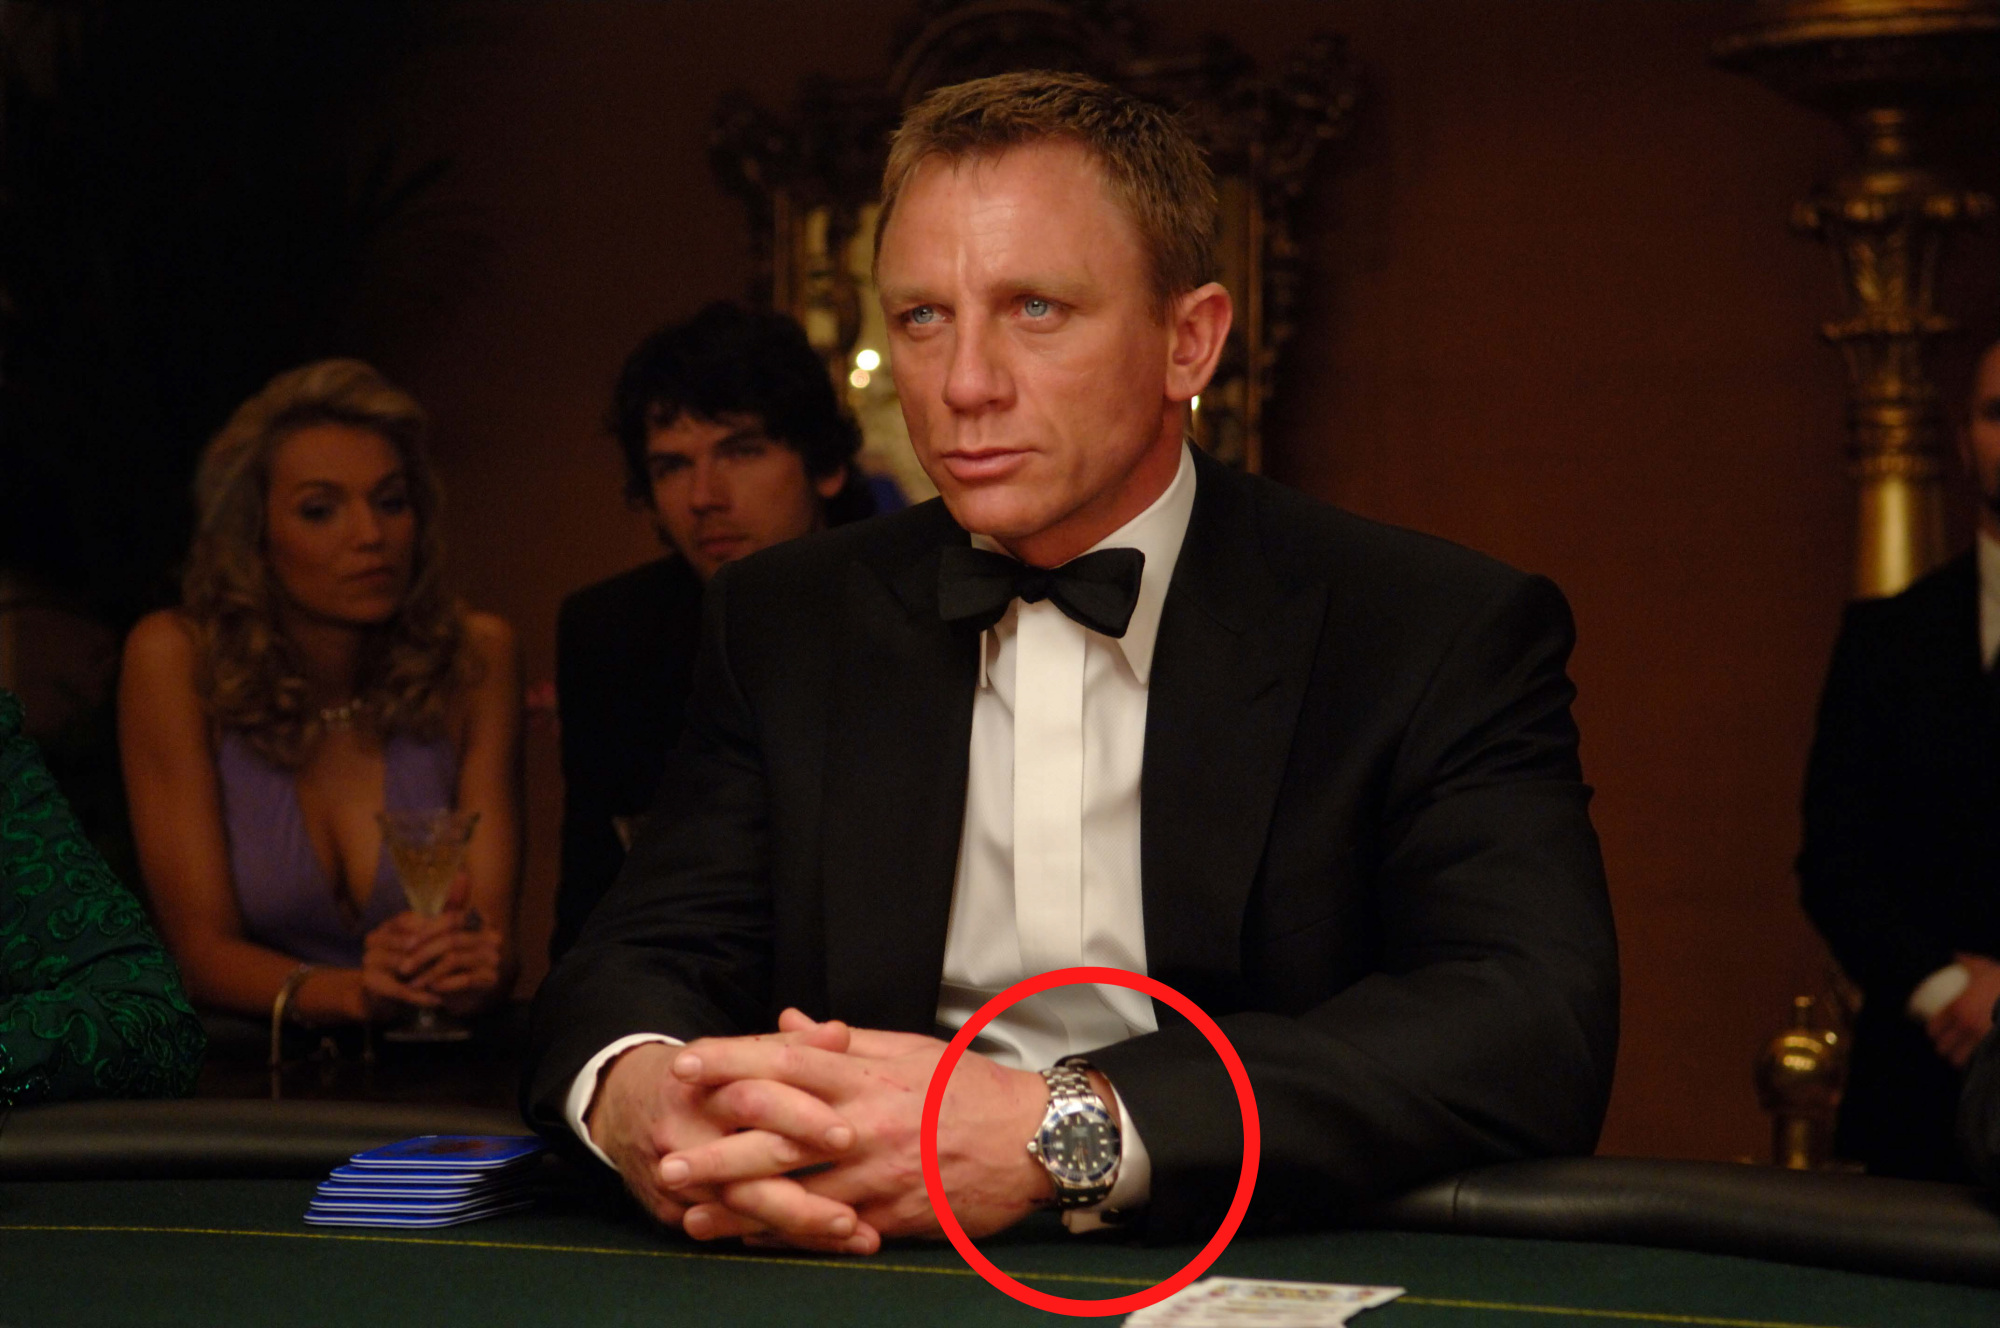 2020年新款007邦德手表,特工气息扑面而来,硬汉腕表内部参考